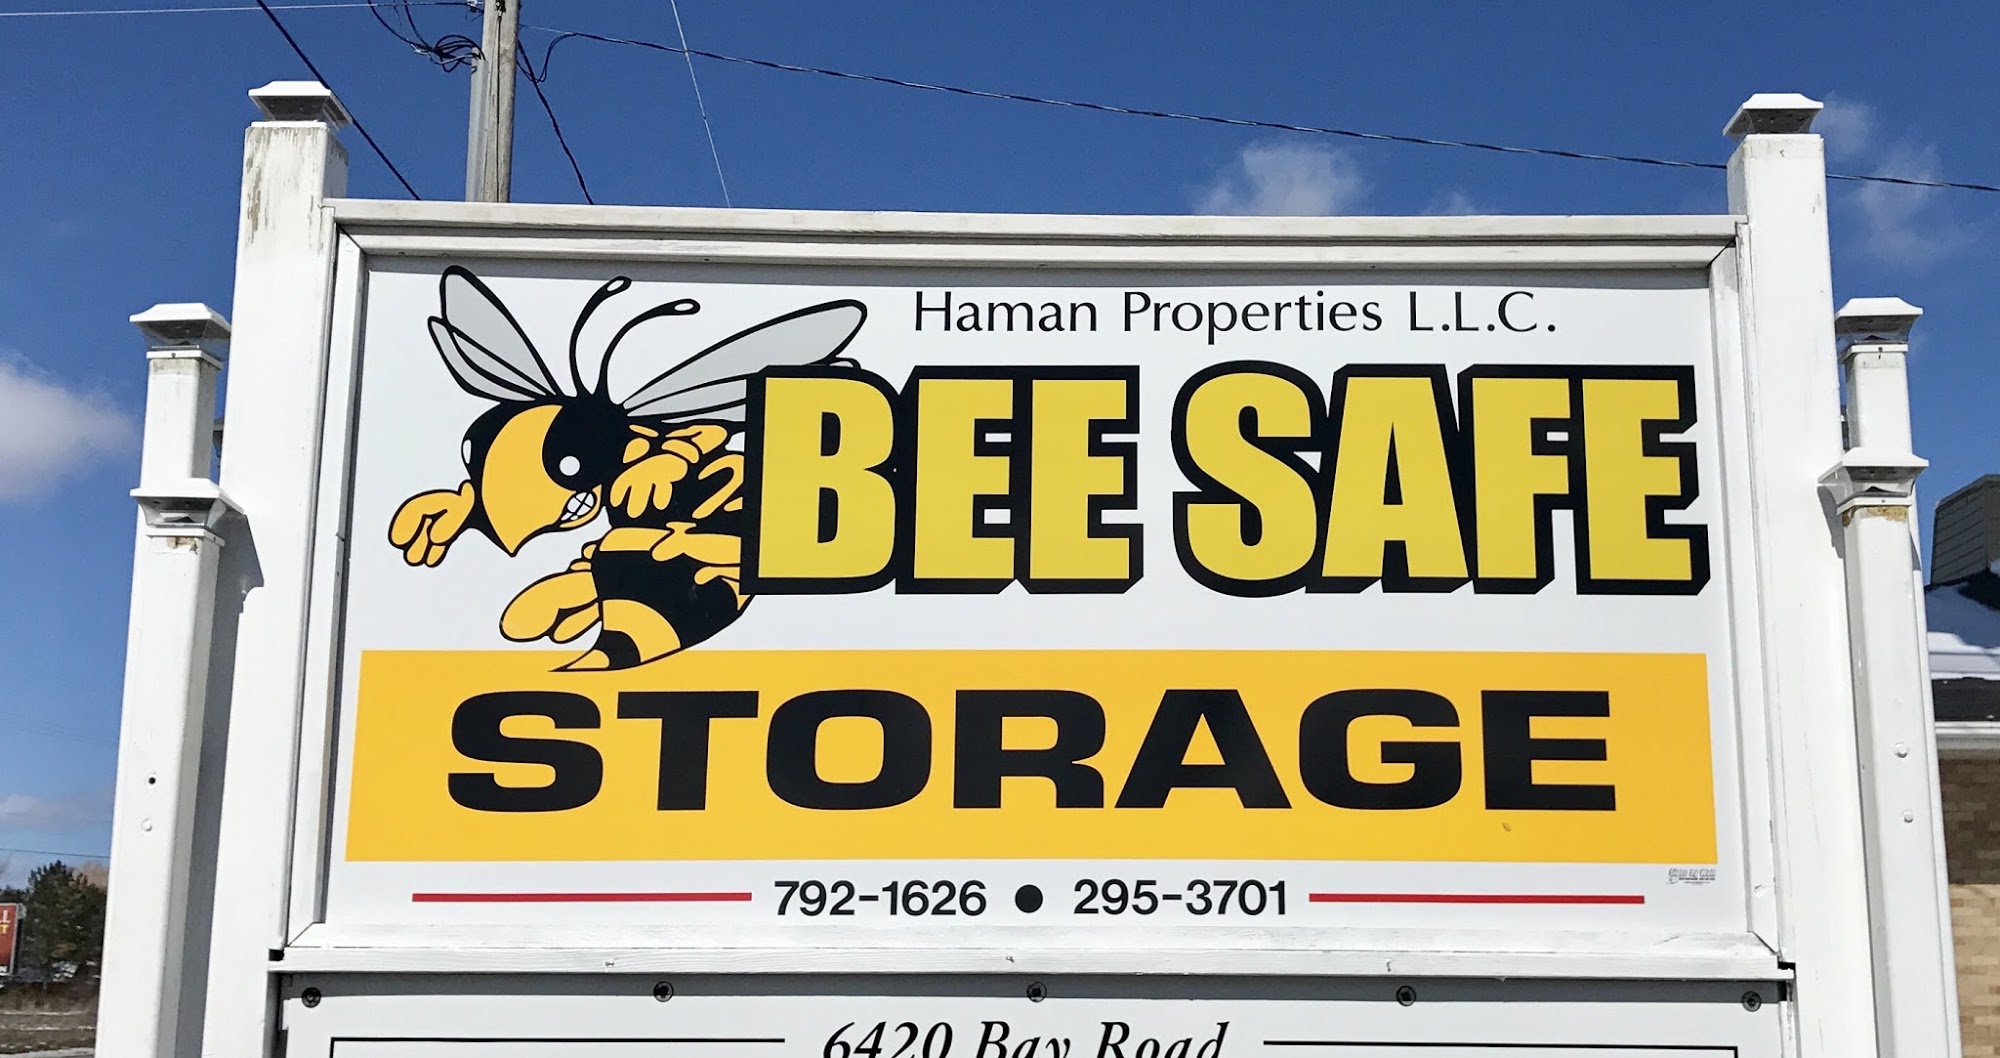 Bee Safe Storage